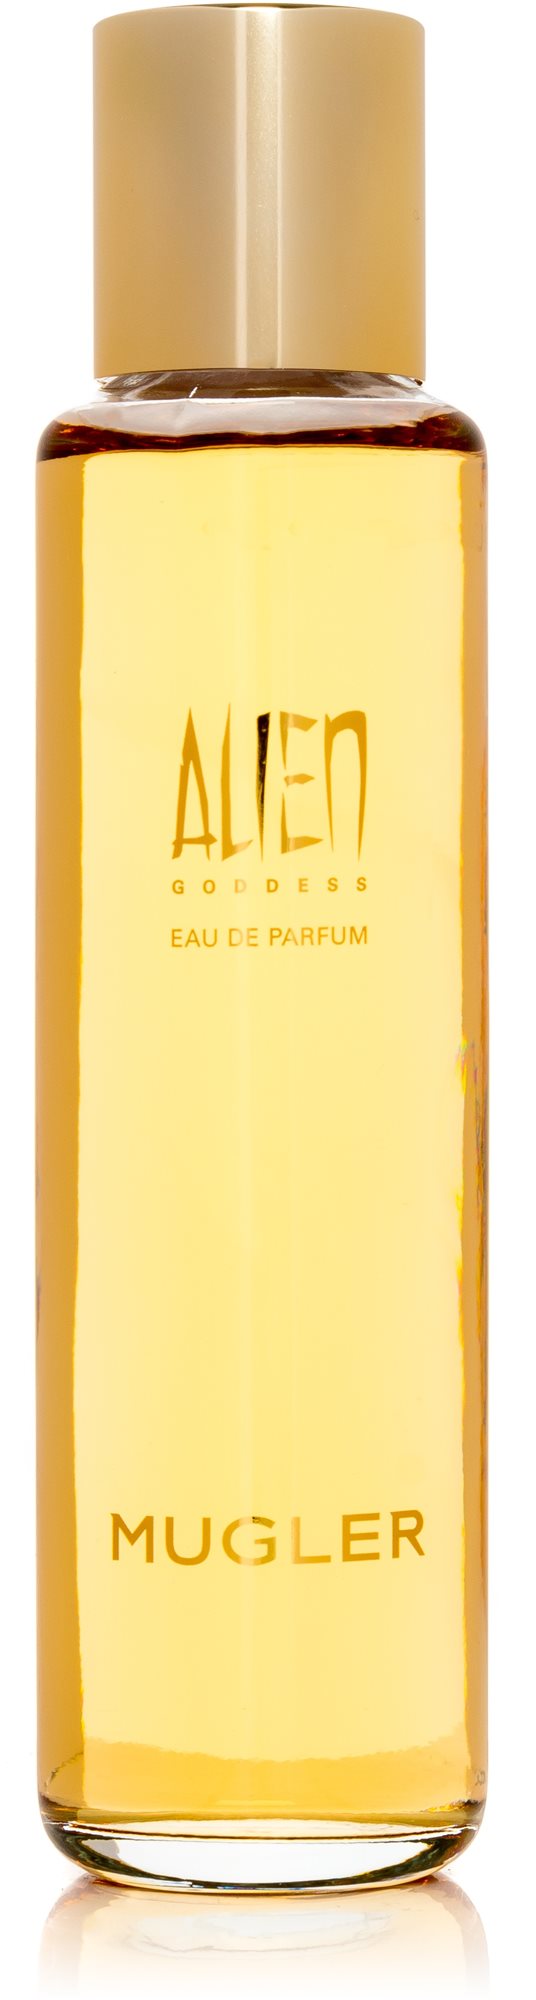 Parfüm THIERRY MUGLER Alien Goddess EdP 100 ml Refill